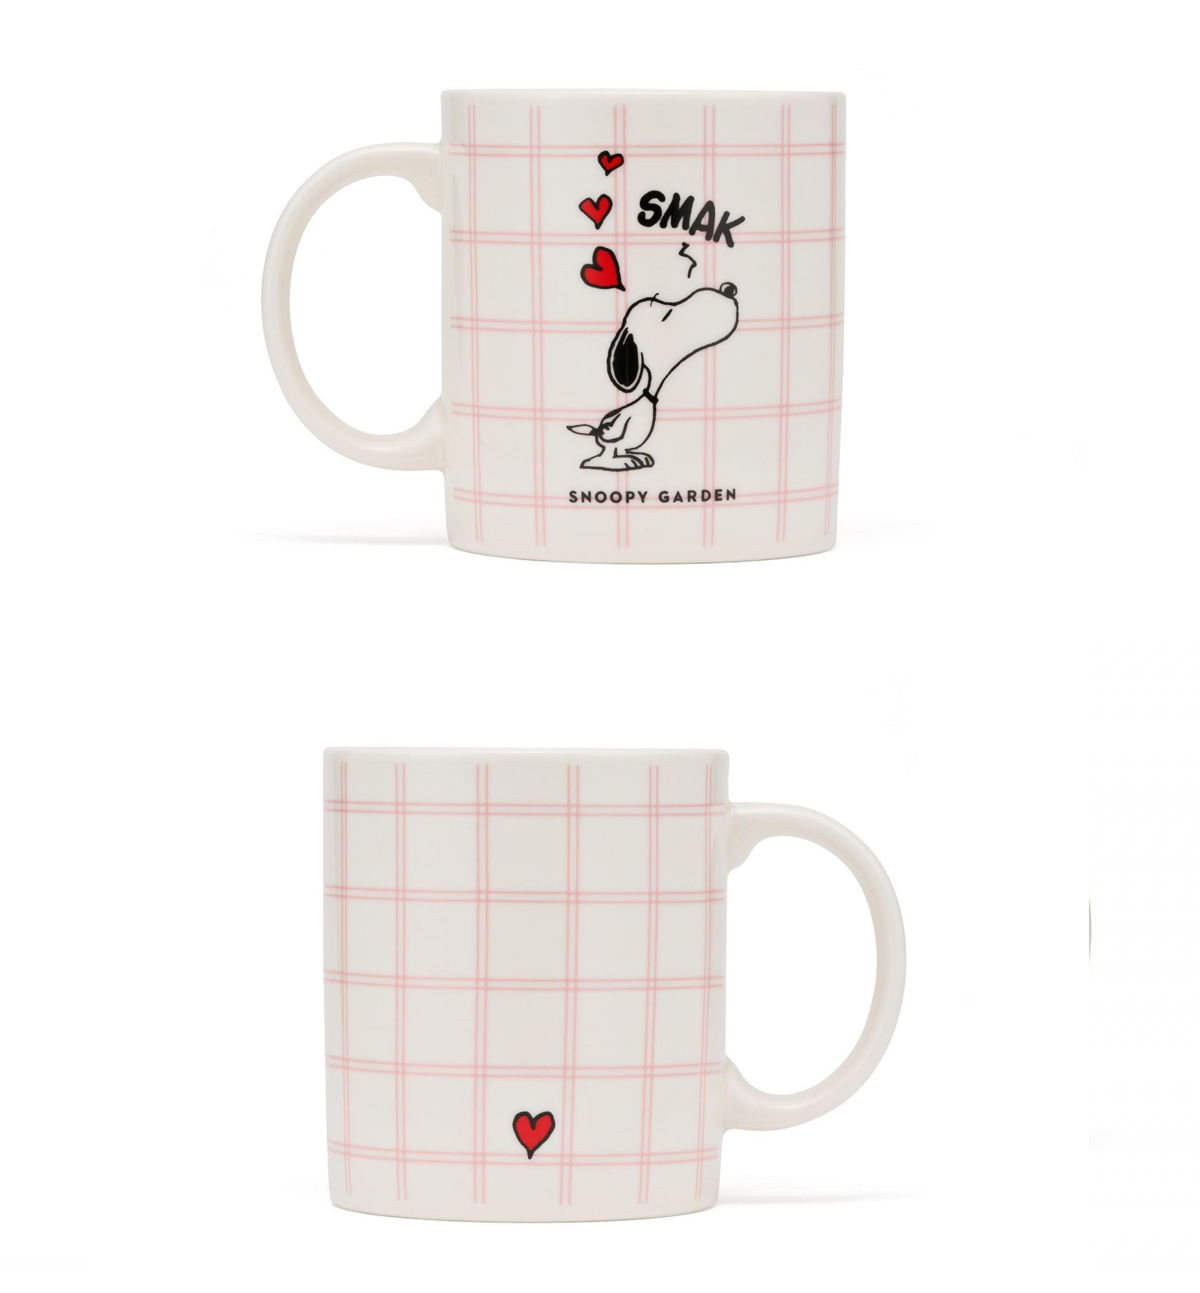 Snoopy & Lucy Smak Mug Set [2 Mugs]